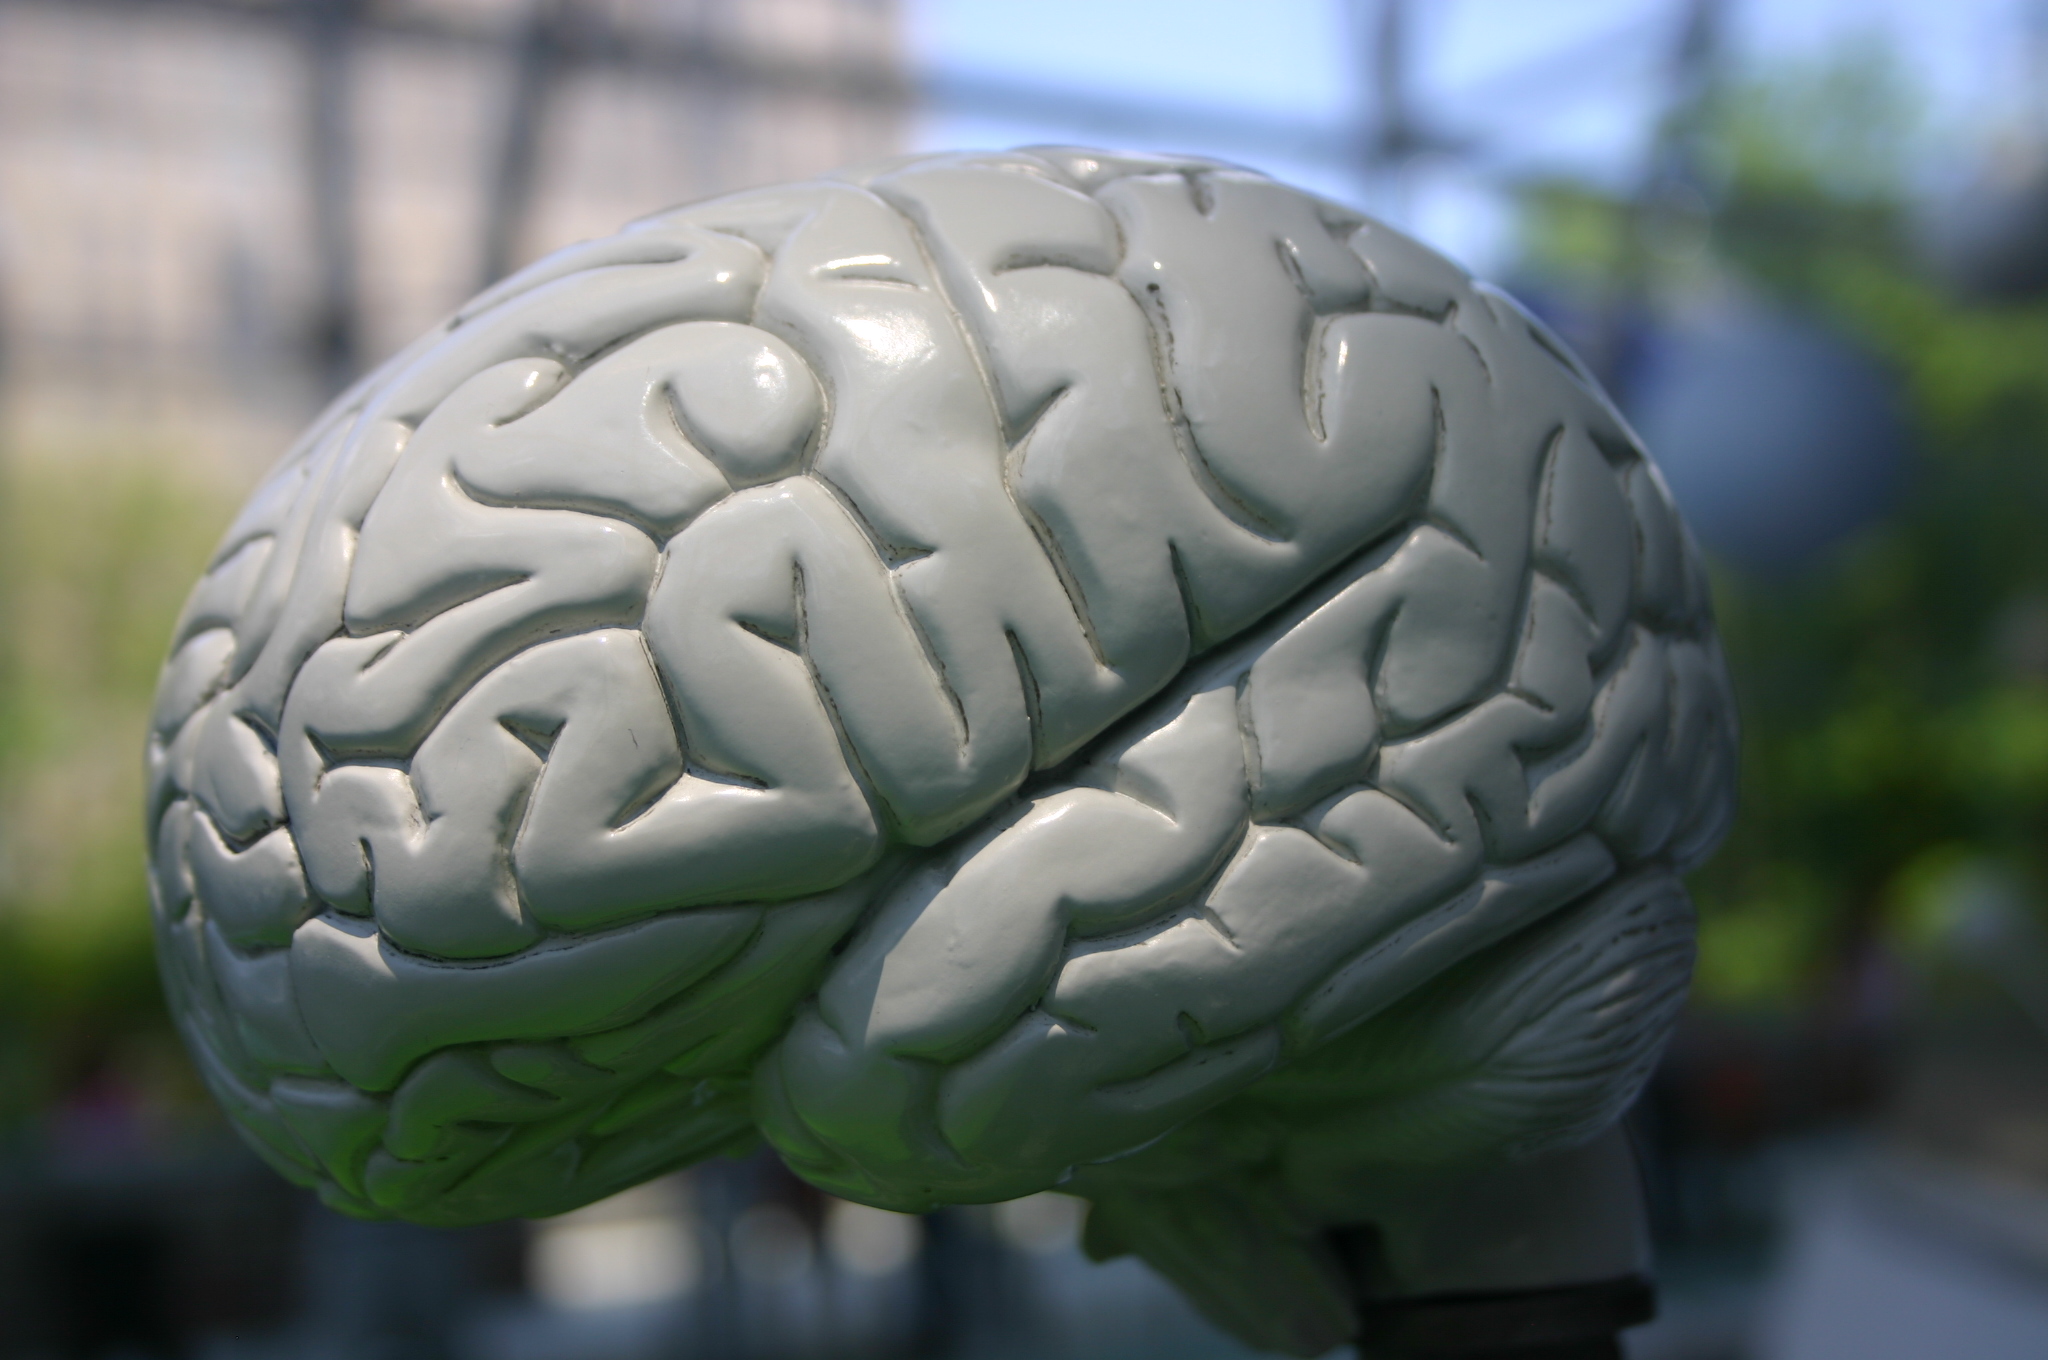 Solo el 2% de las personas en México se implantarían un chip en el cerebro para mejorar su capacidad cognitiva.